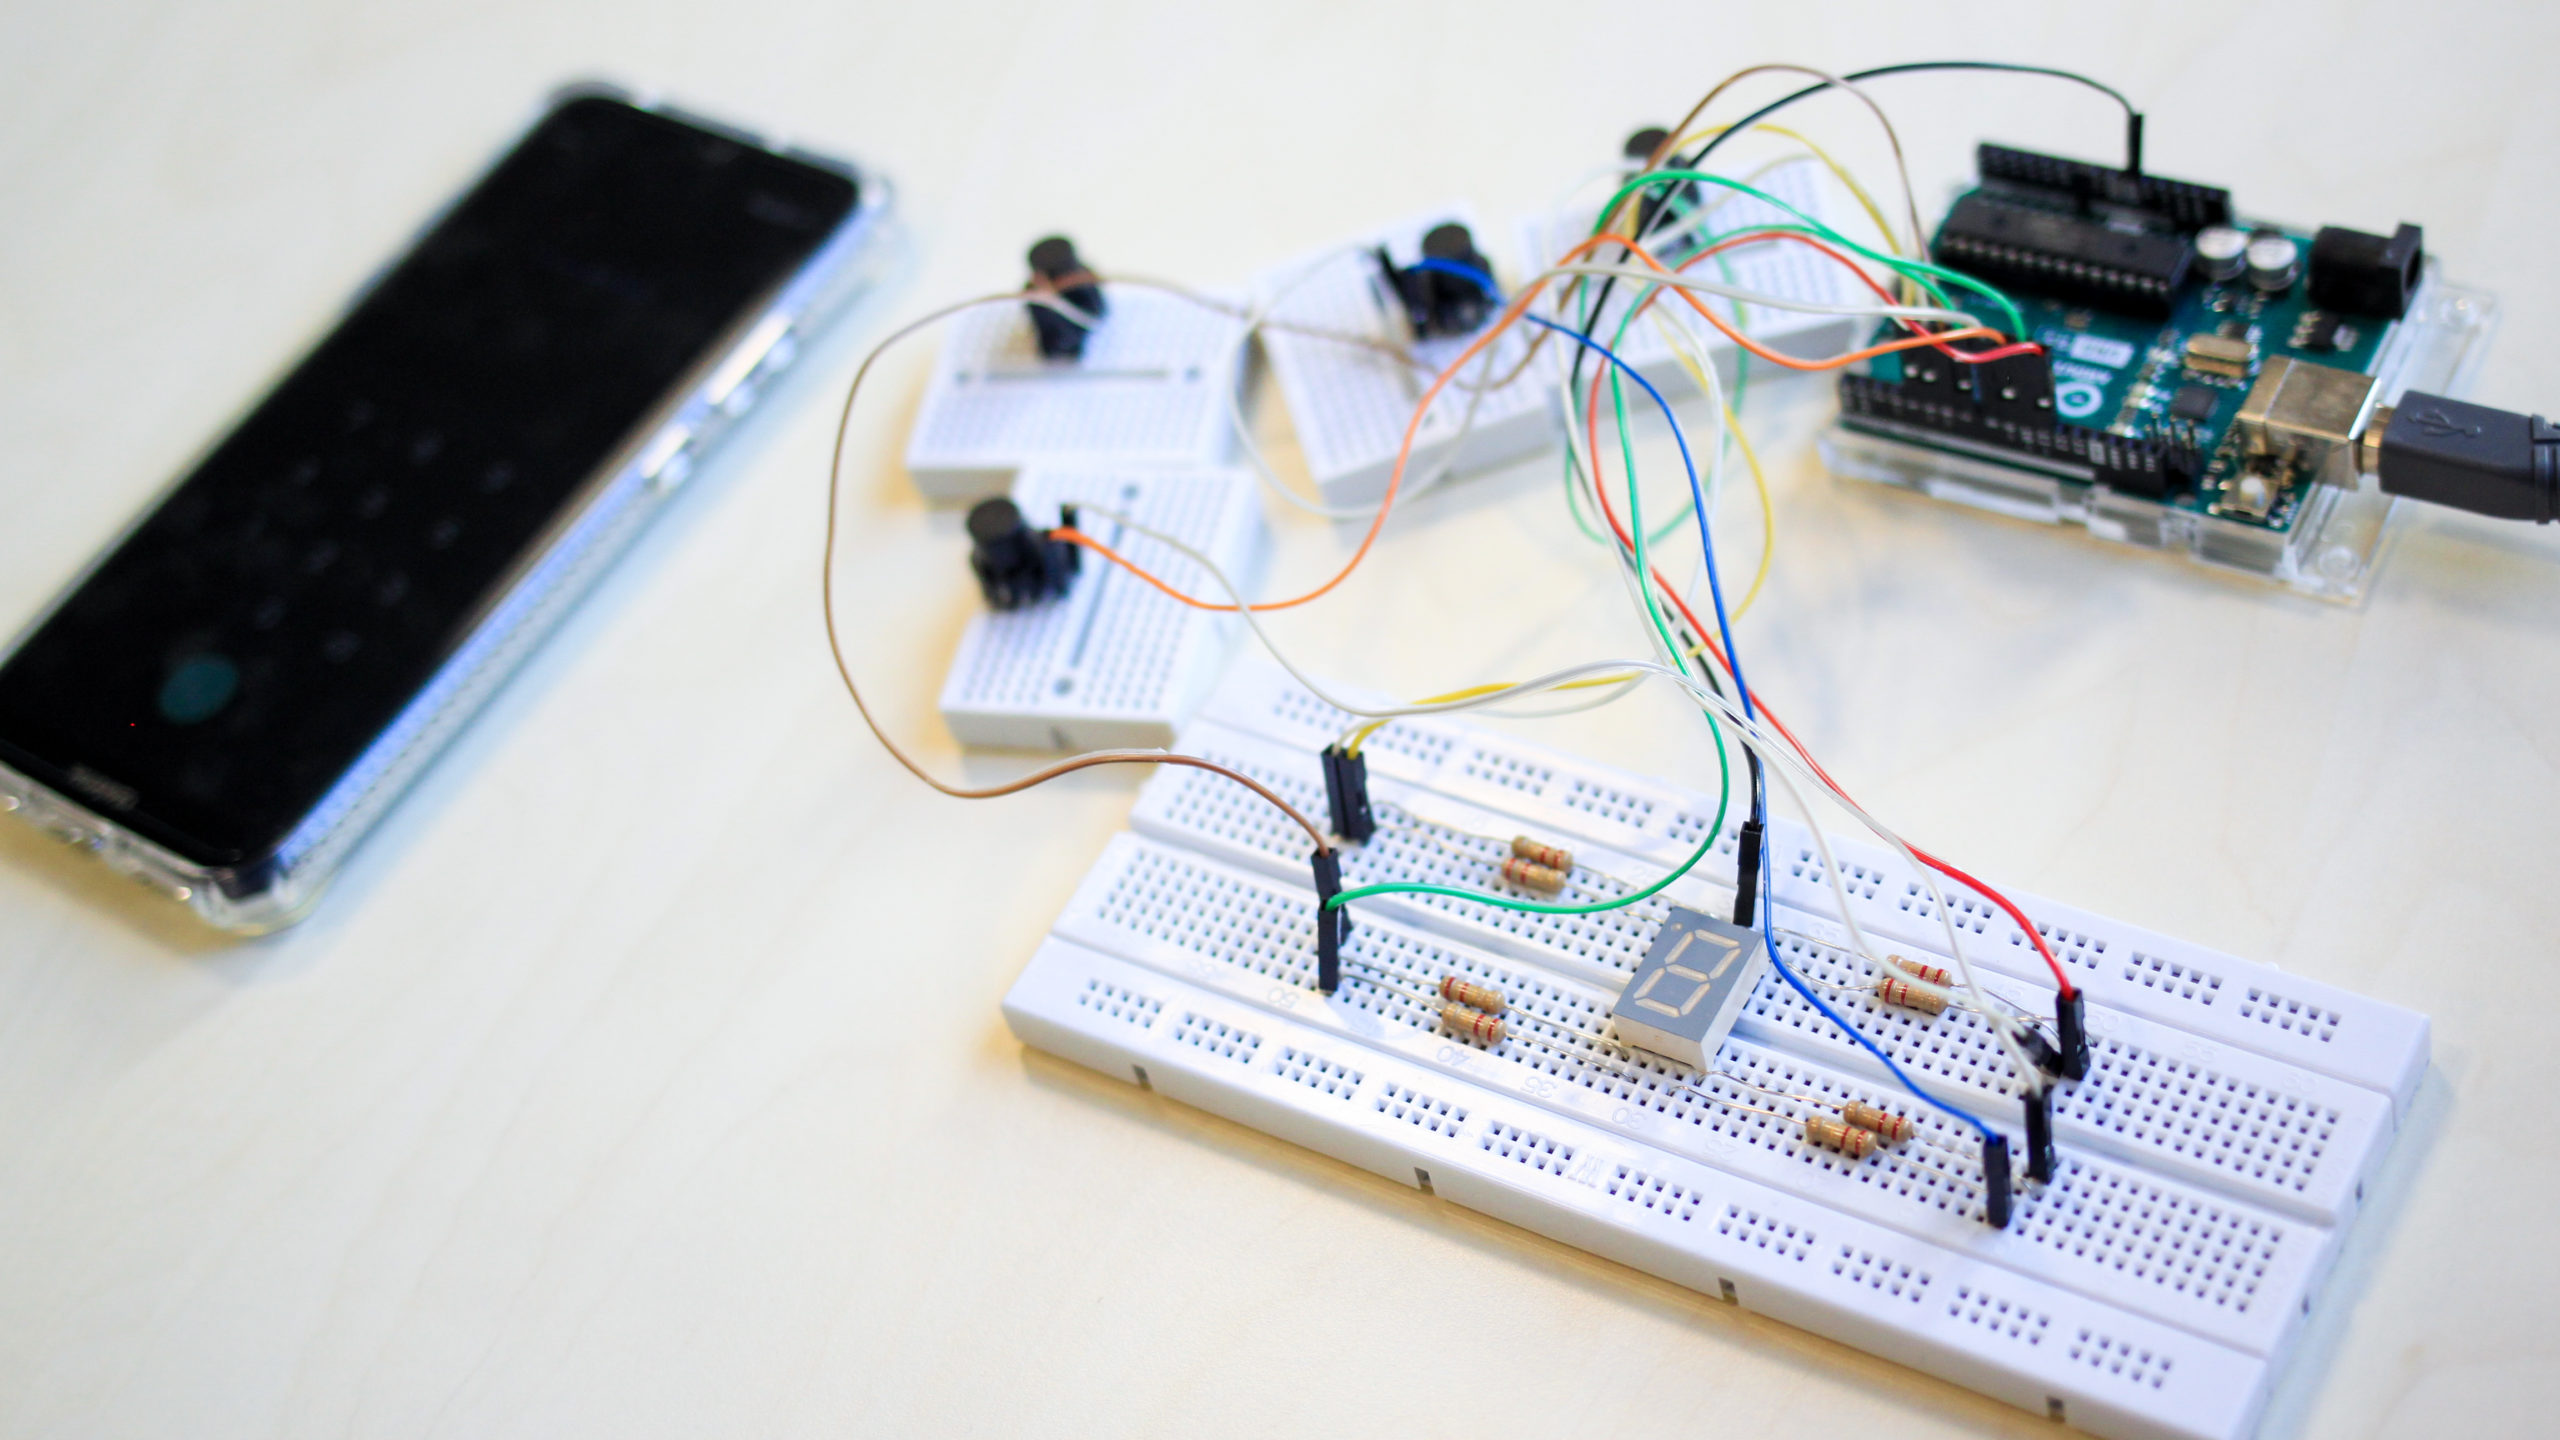 Photographie en gros plan d'un téléphone et d'un circuit électronique composé d'un cadran numérique et de boutons pressoirs.